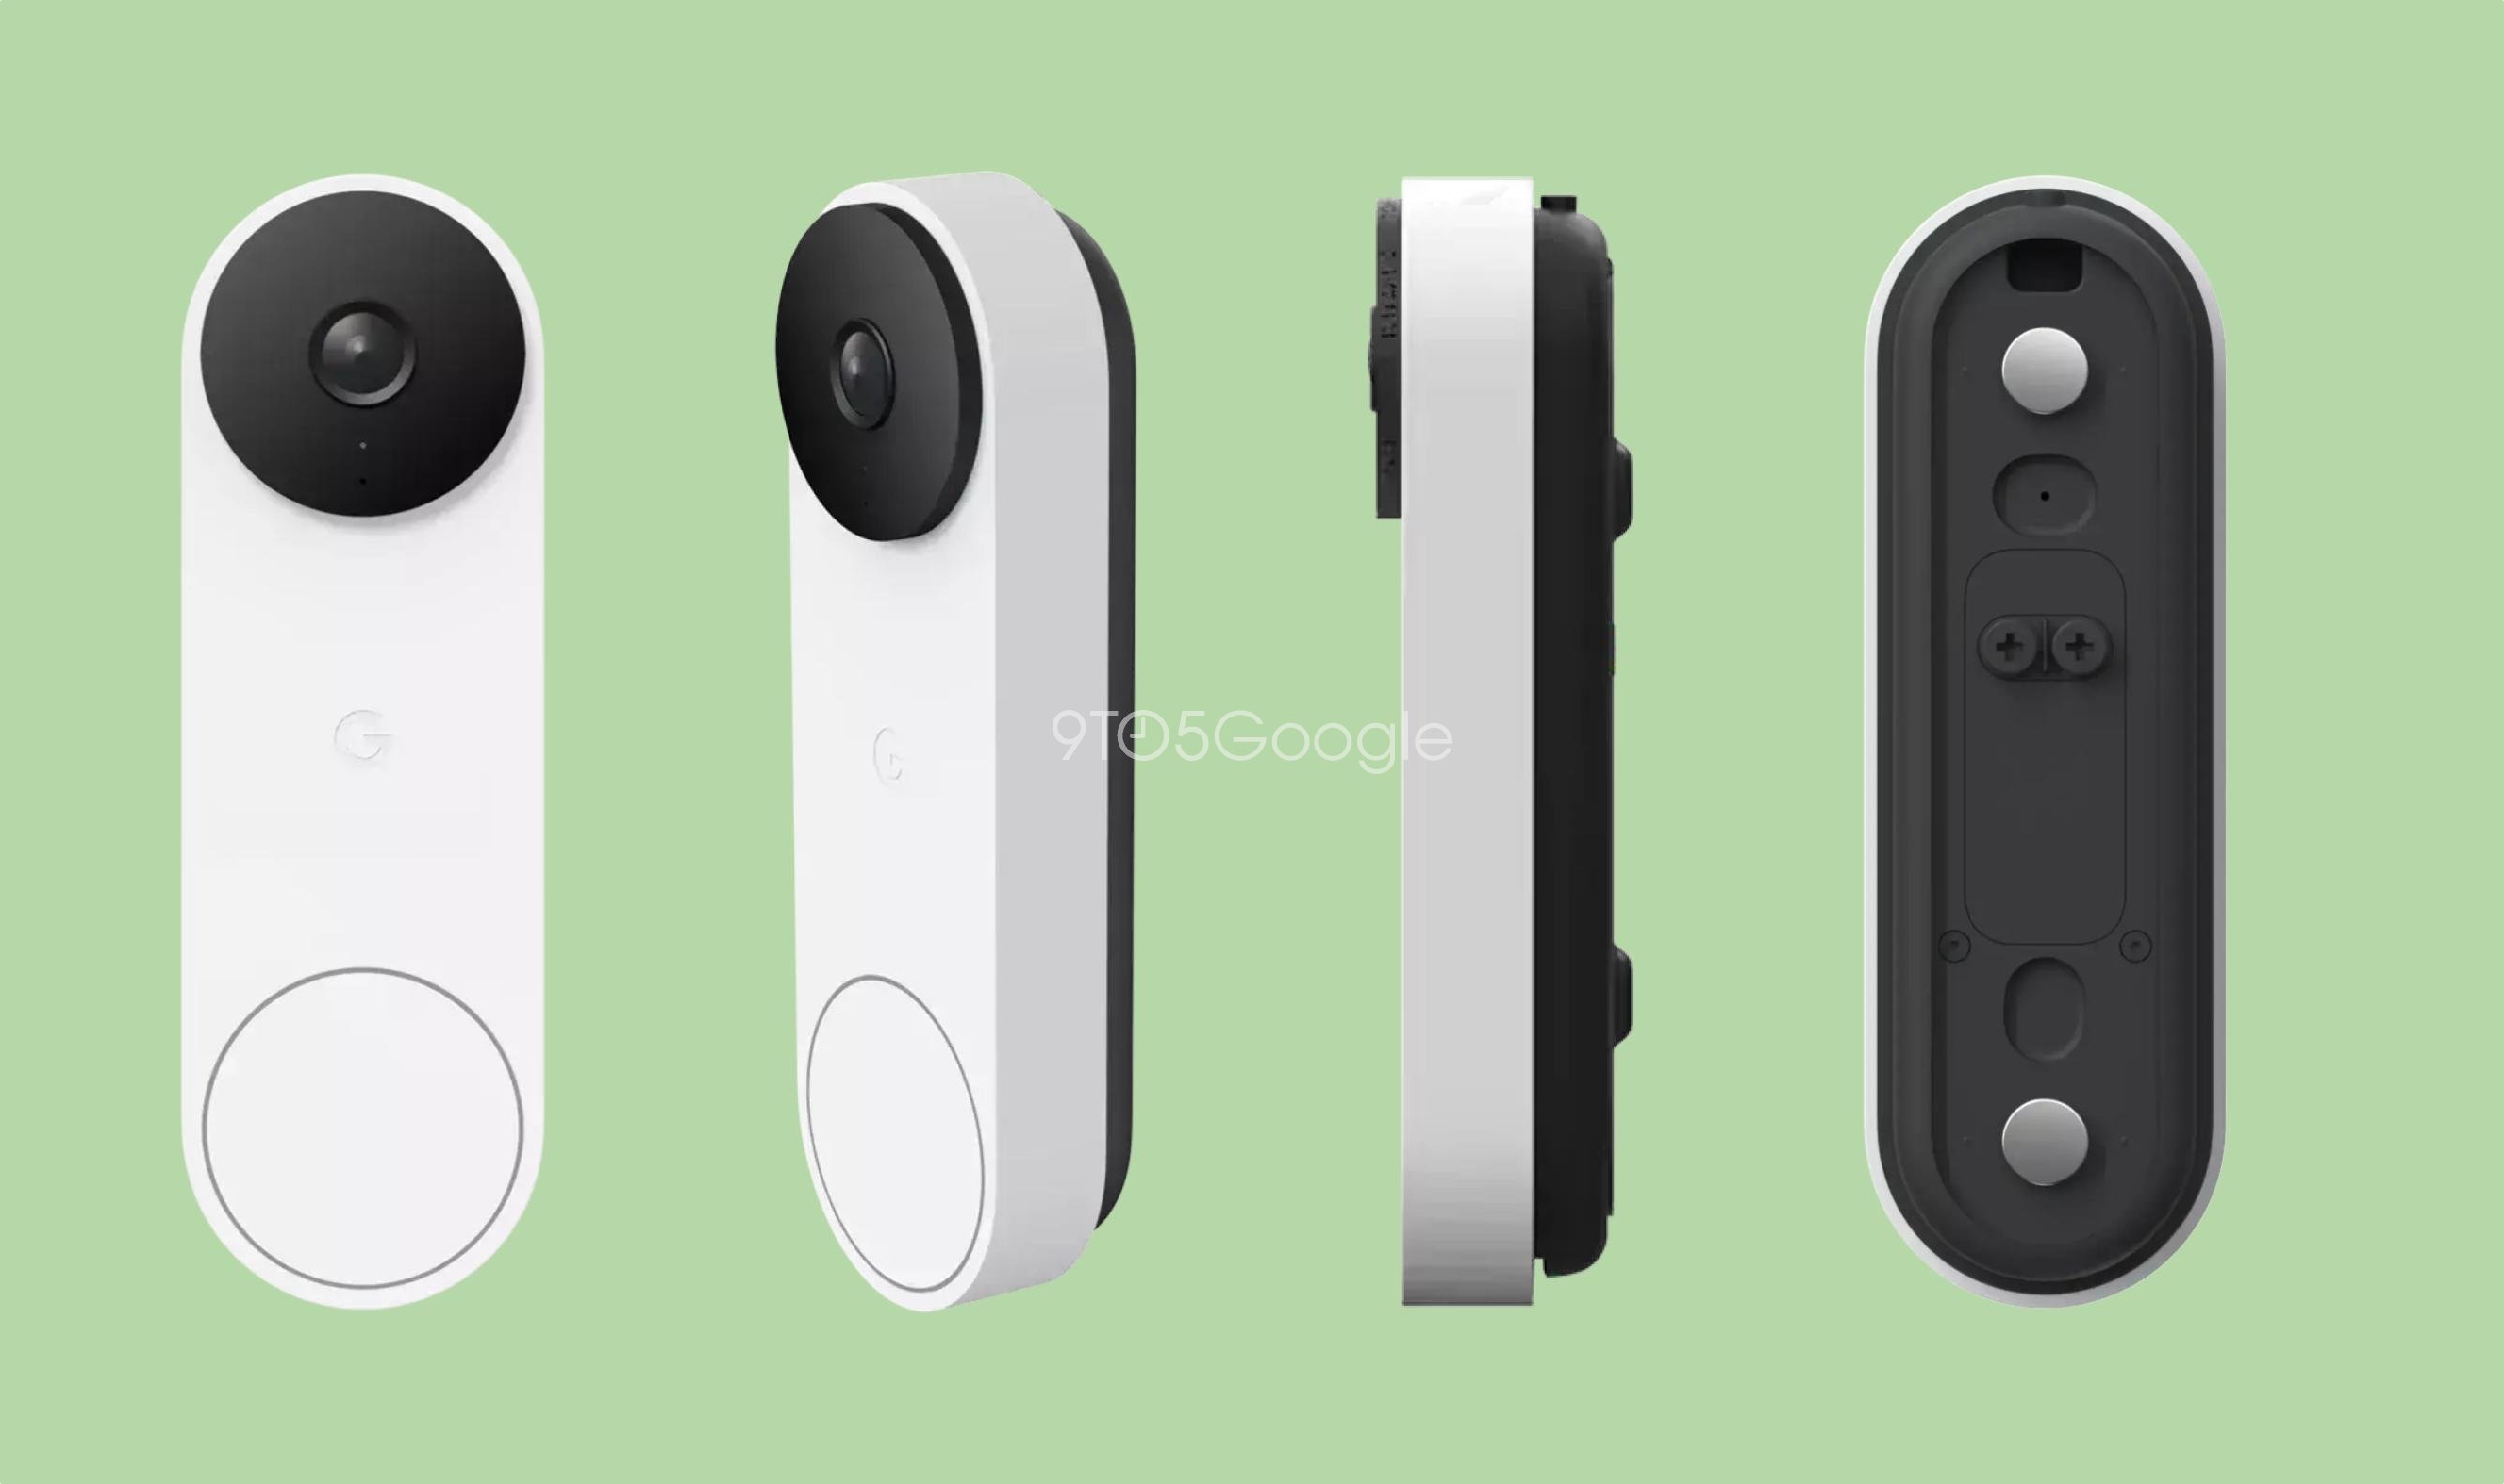 Google wird eine neue intelligente Türklingel Nest Doorbell, das Gerät wird eine Kamera und kabelgebundene Verbindung erhalten